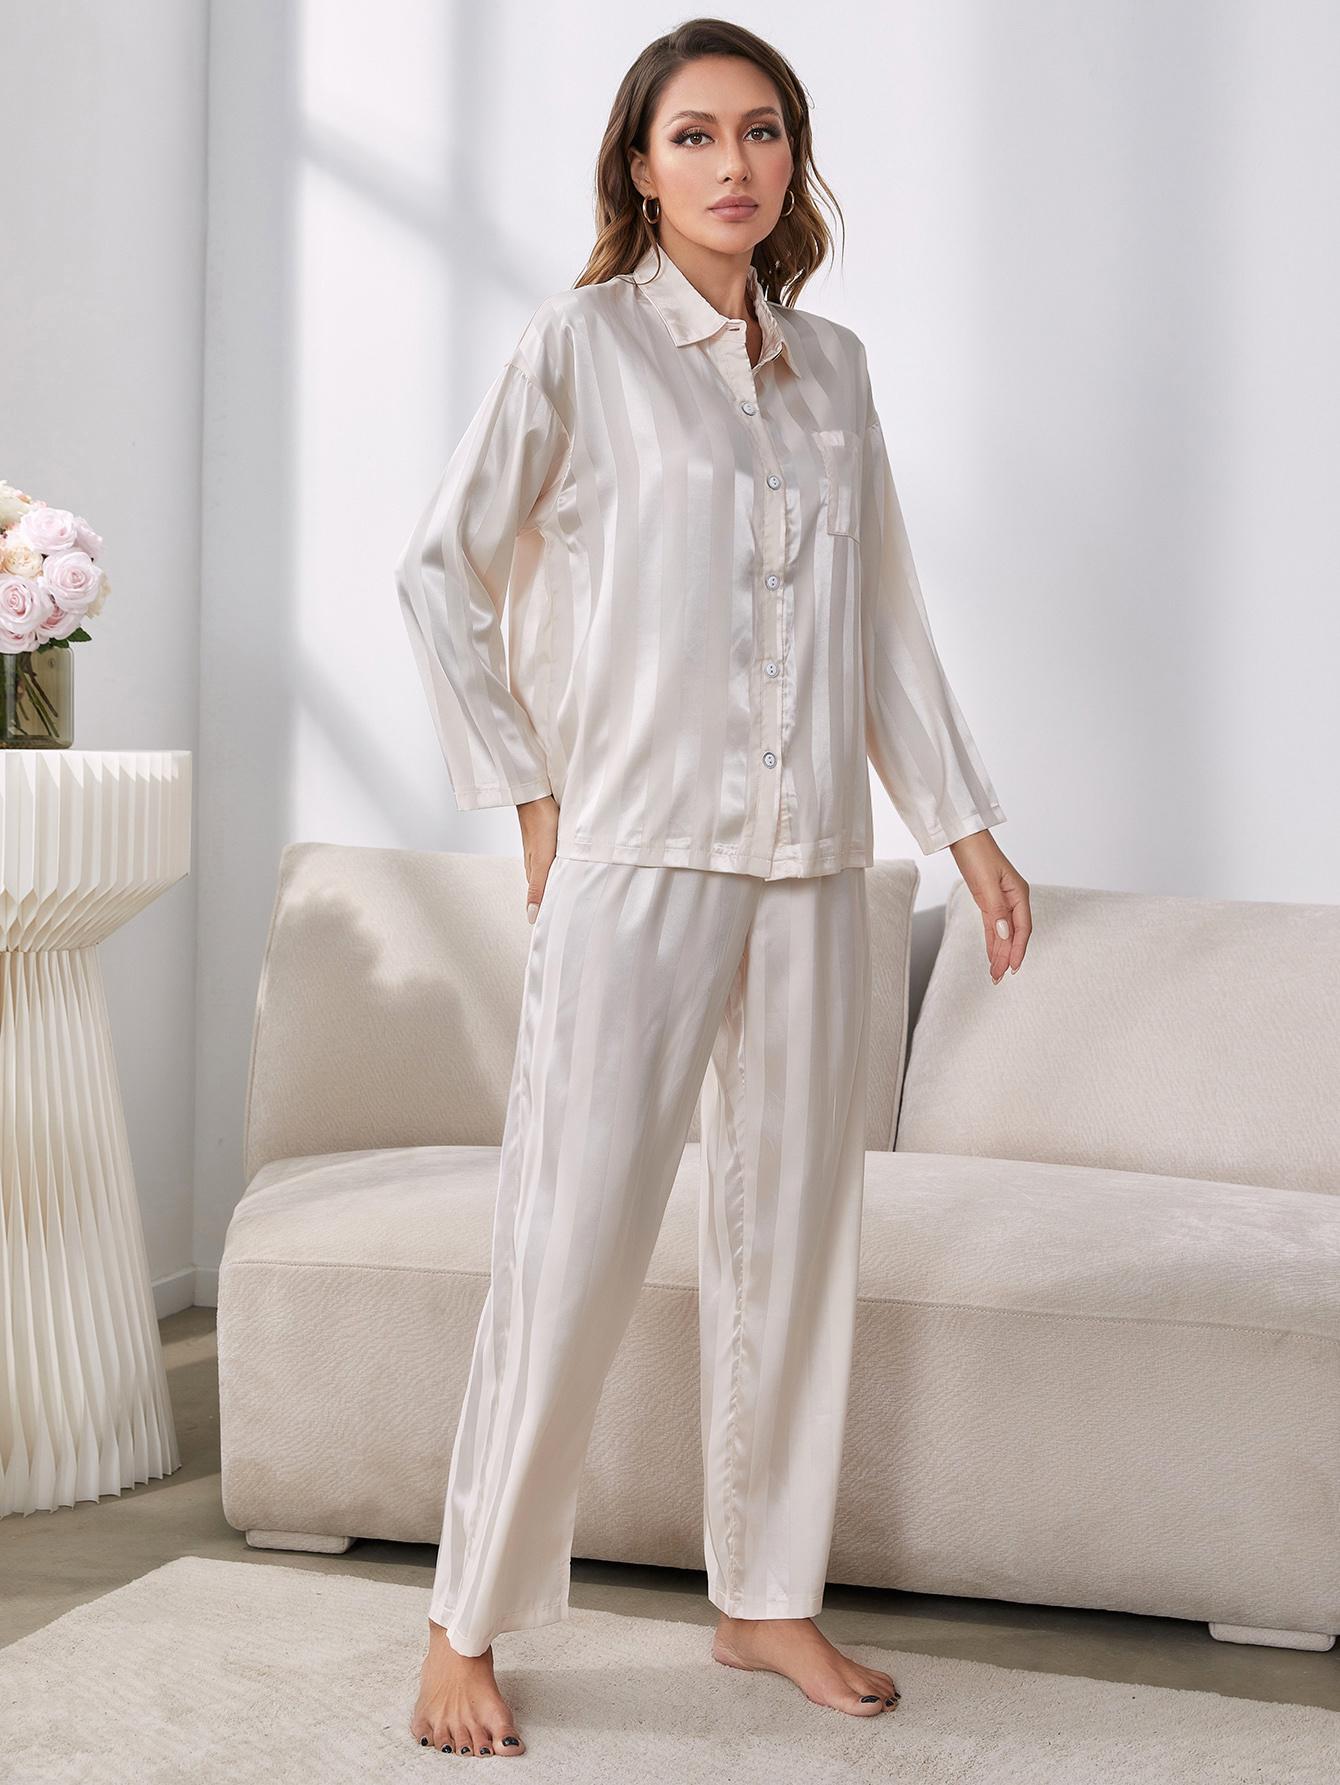 Women’s Button-Up Shirt and Pants Pajama Set